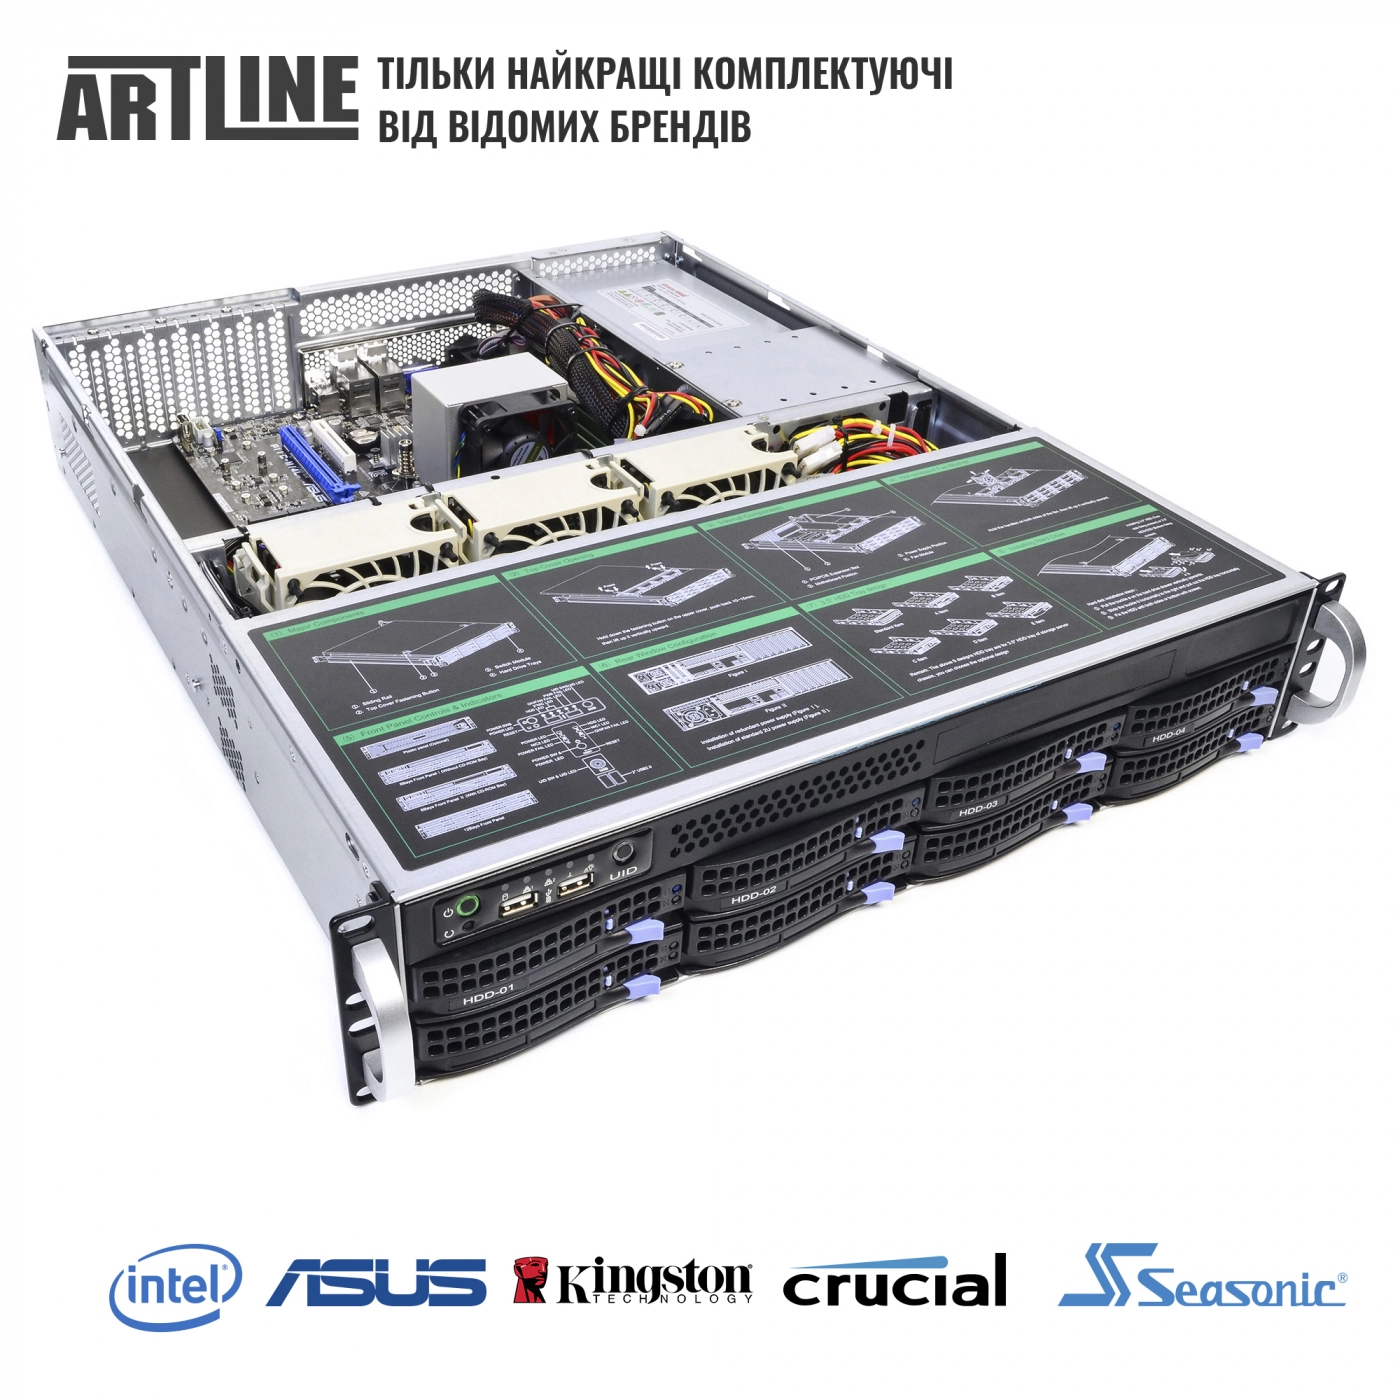 Купить Сервер ARTLINE Business R35v16 - фото 6